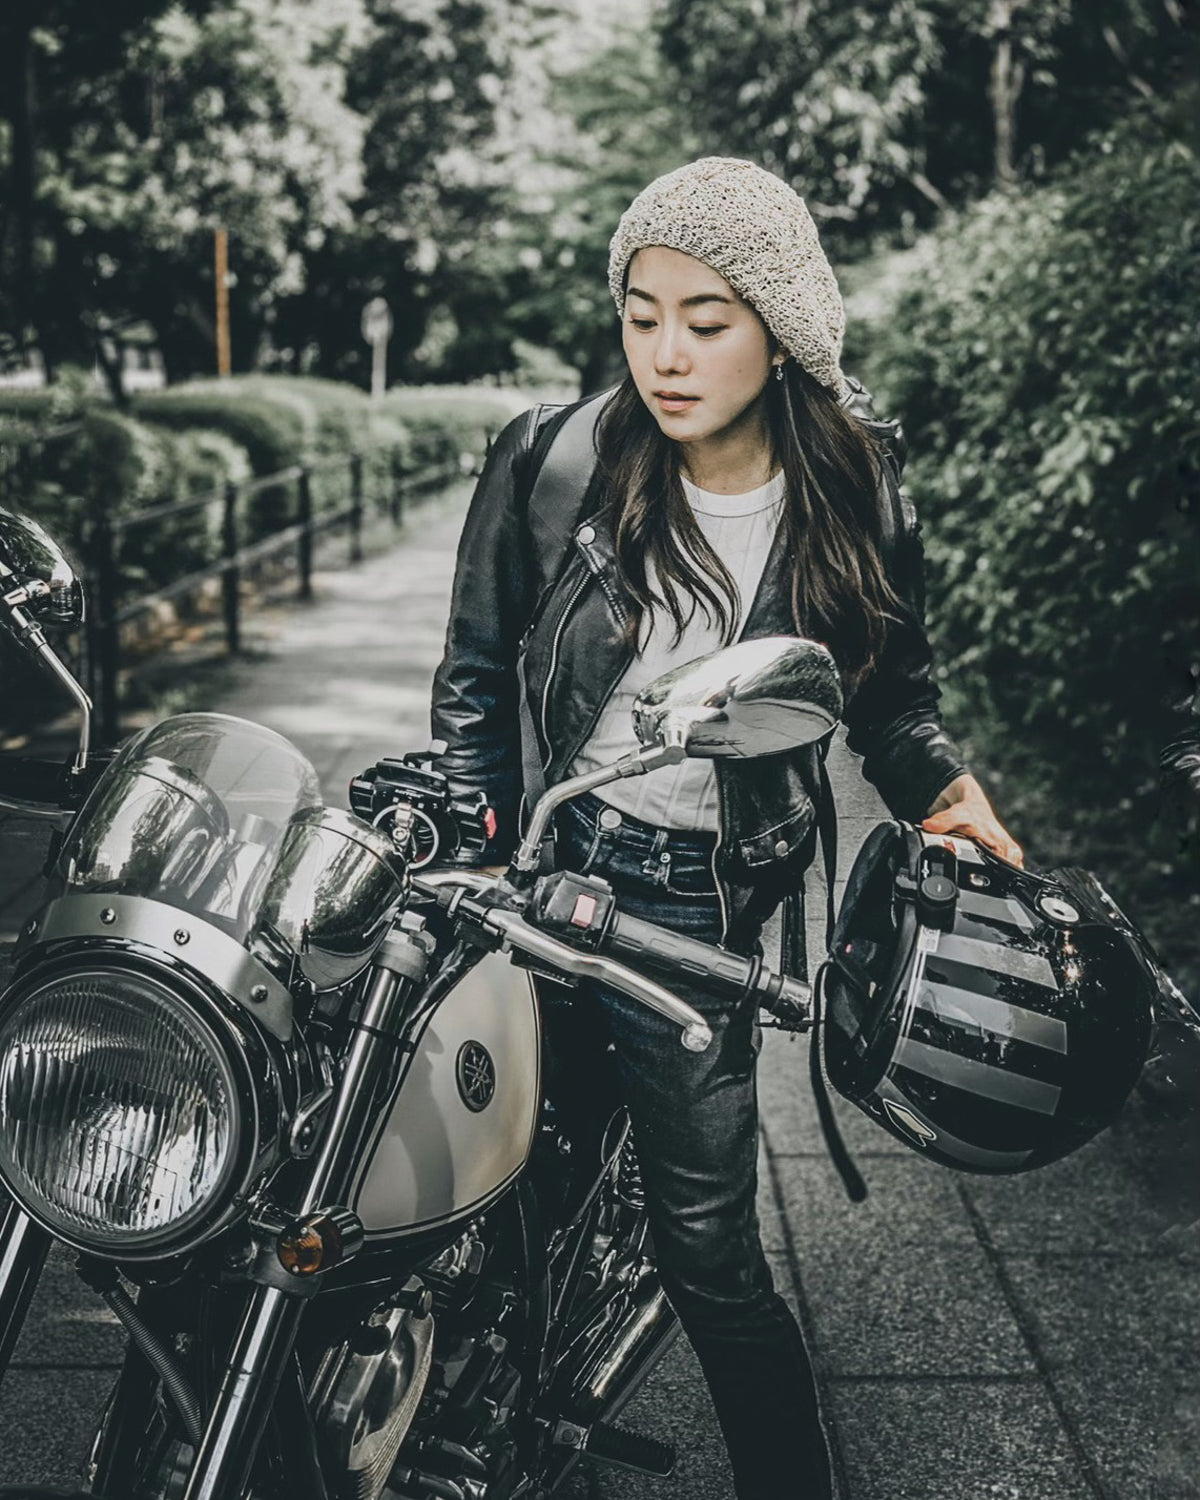 Her story Nami Migita - Moto Femmes